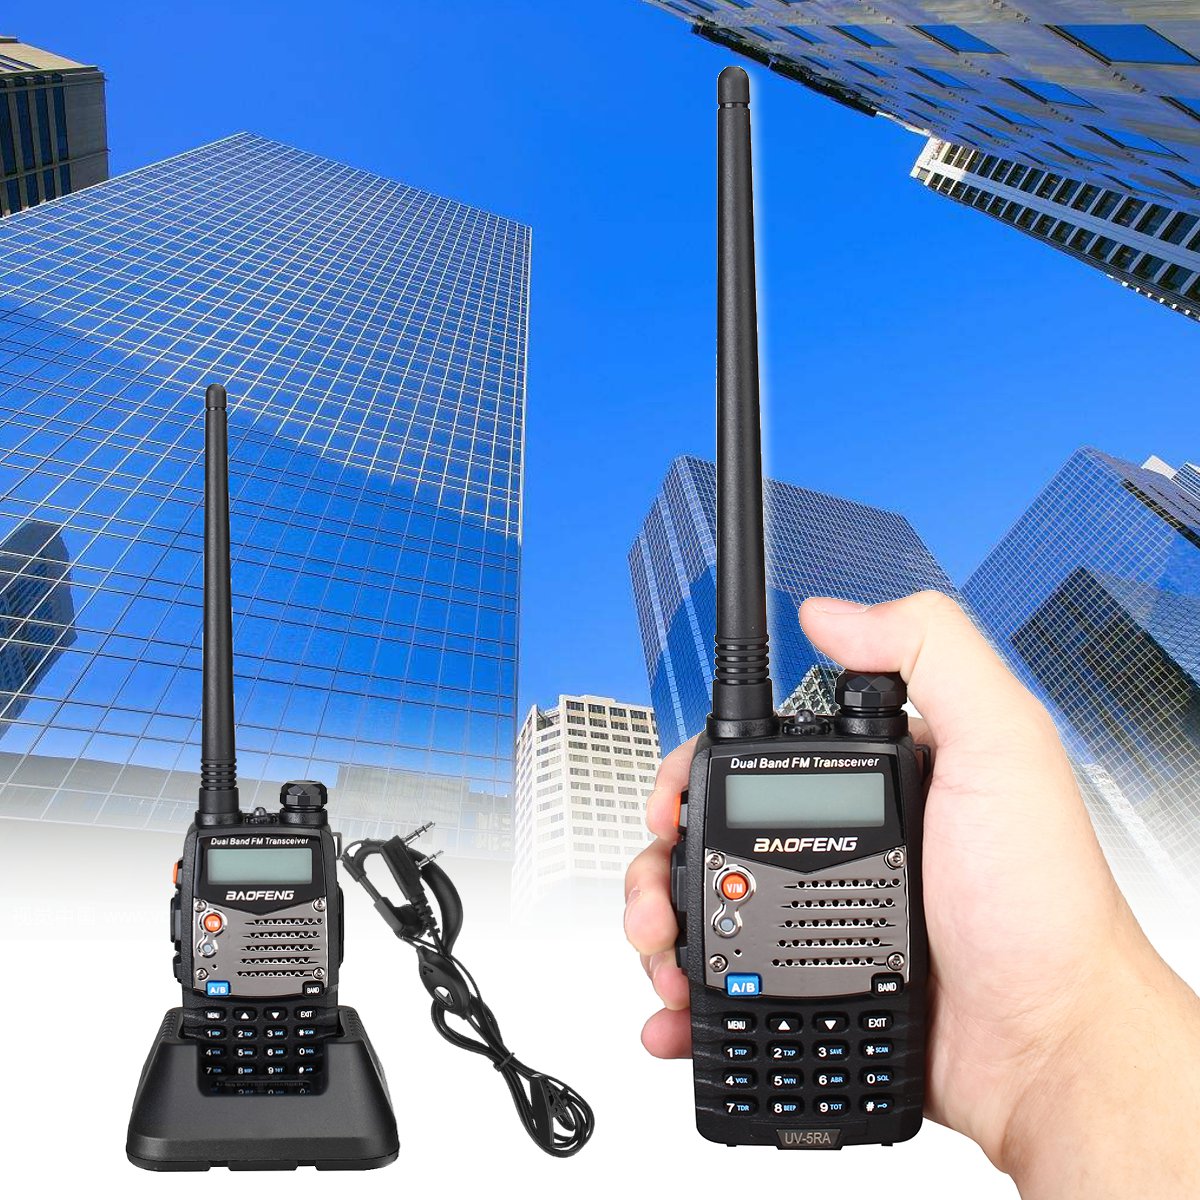 

BAOFENG UV-5RA Handheld Walkie Talkie VHF/UHF 128CH Dual-Band CTCSS FM Ham Two Way Radio